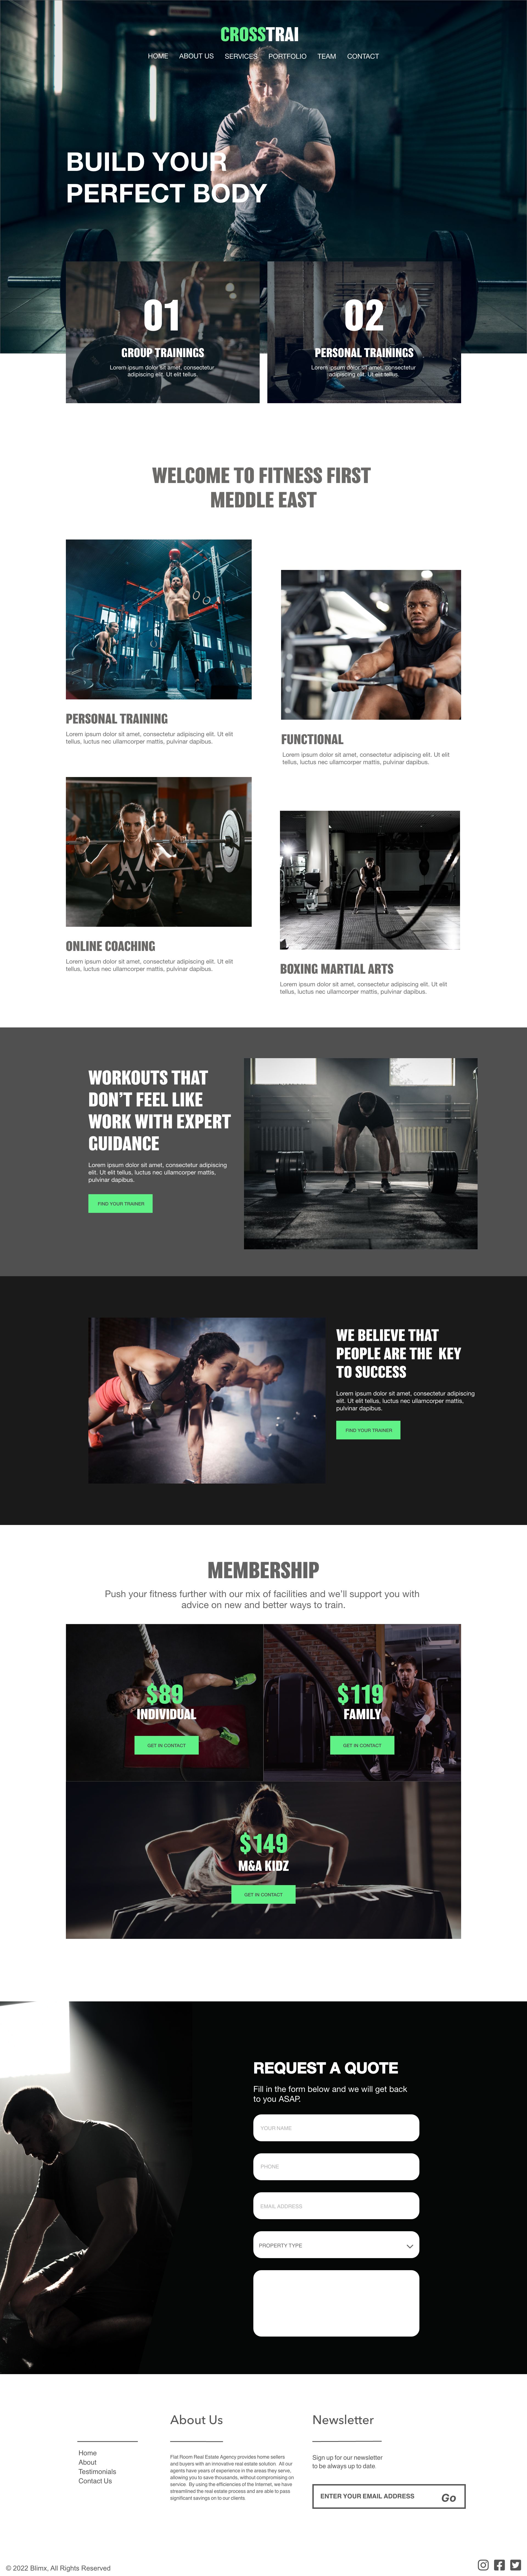 Crossfit Training Website Design